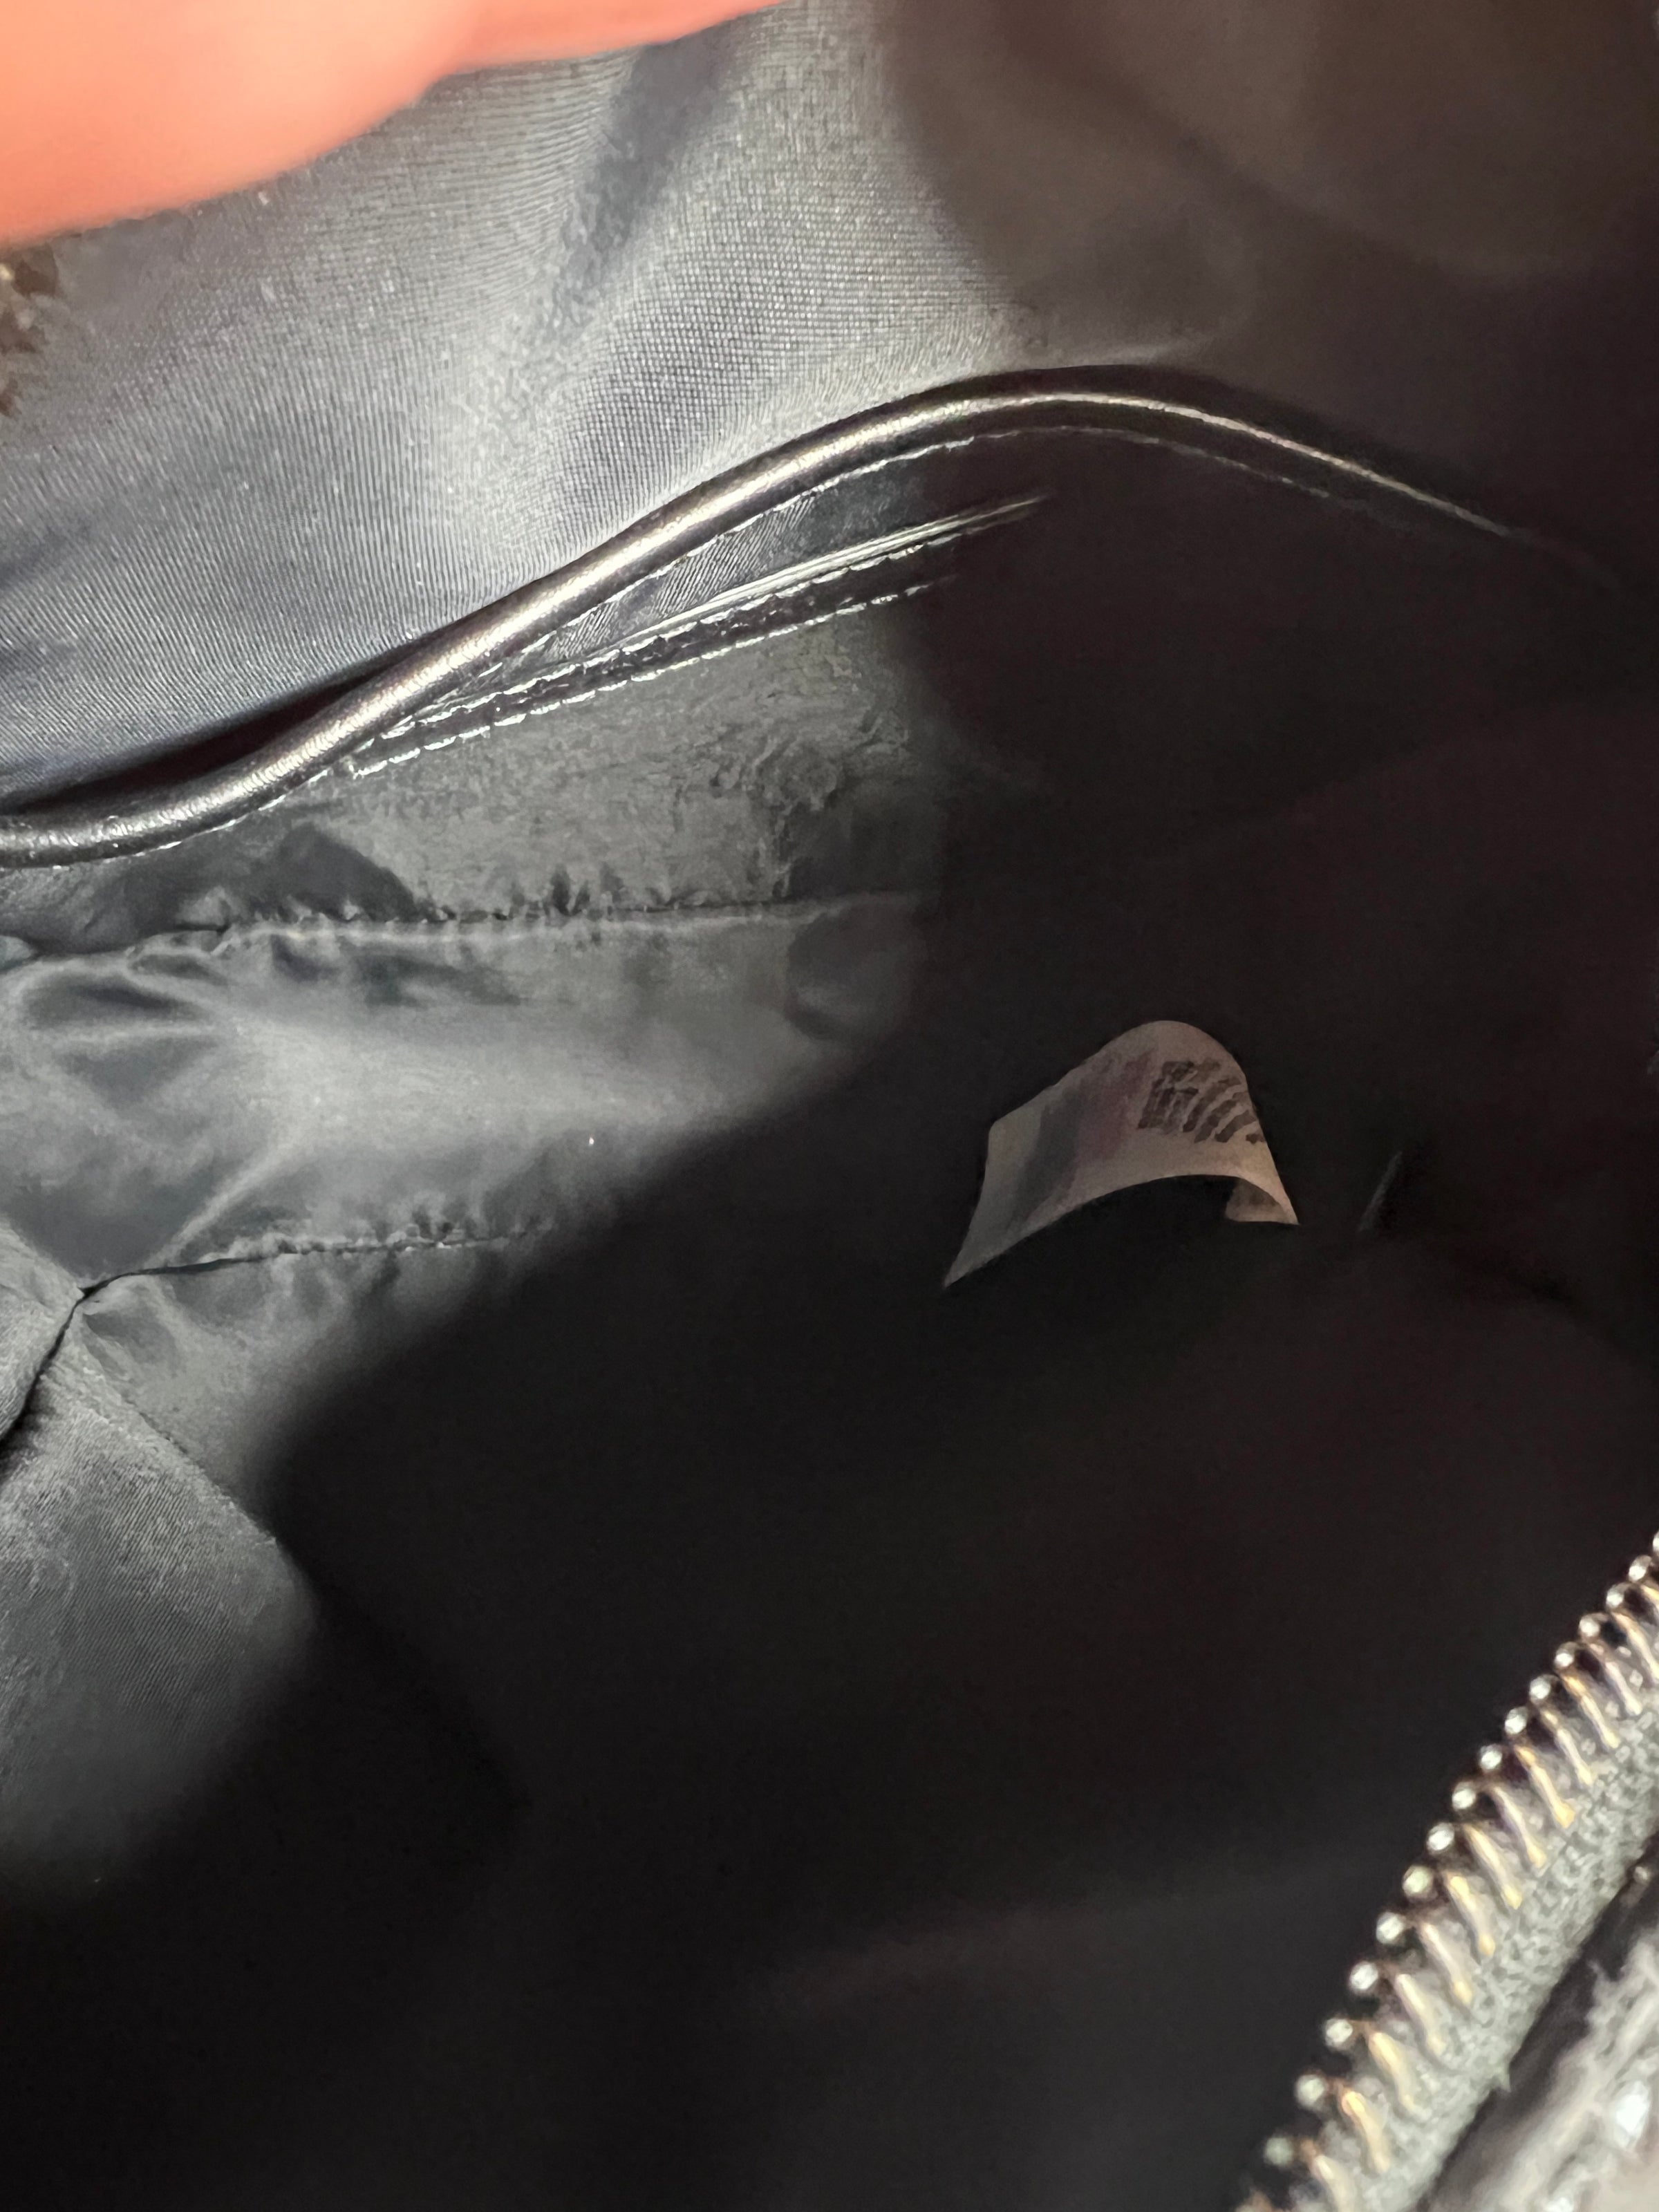 Authentic Louis Vuitton Montsouris Backpack MM monogram - Vinted